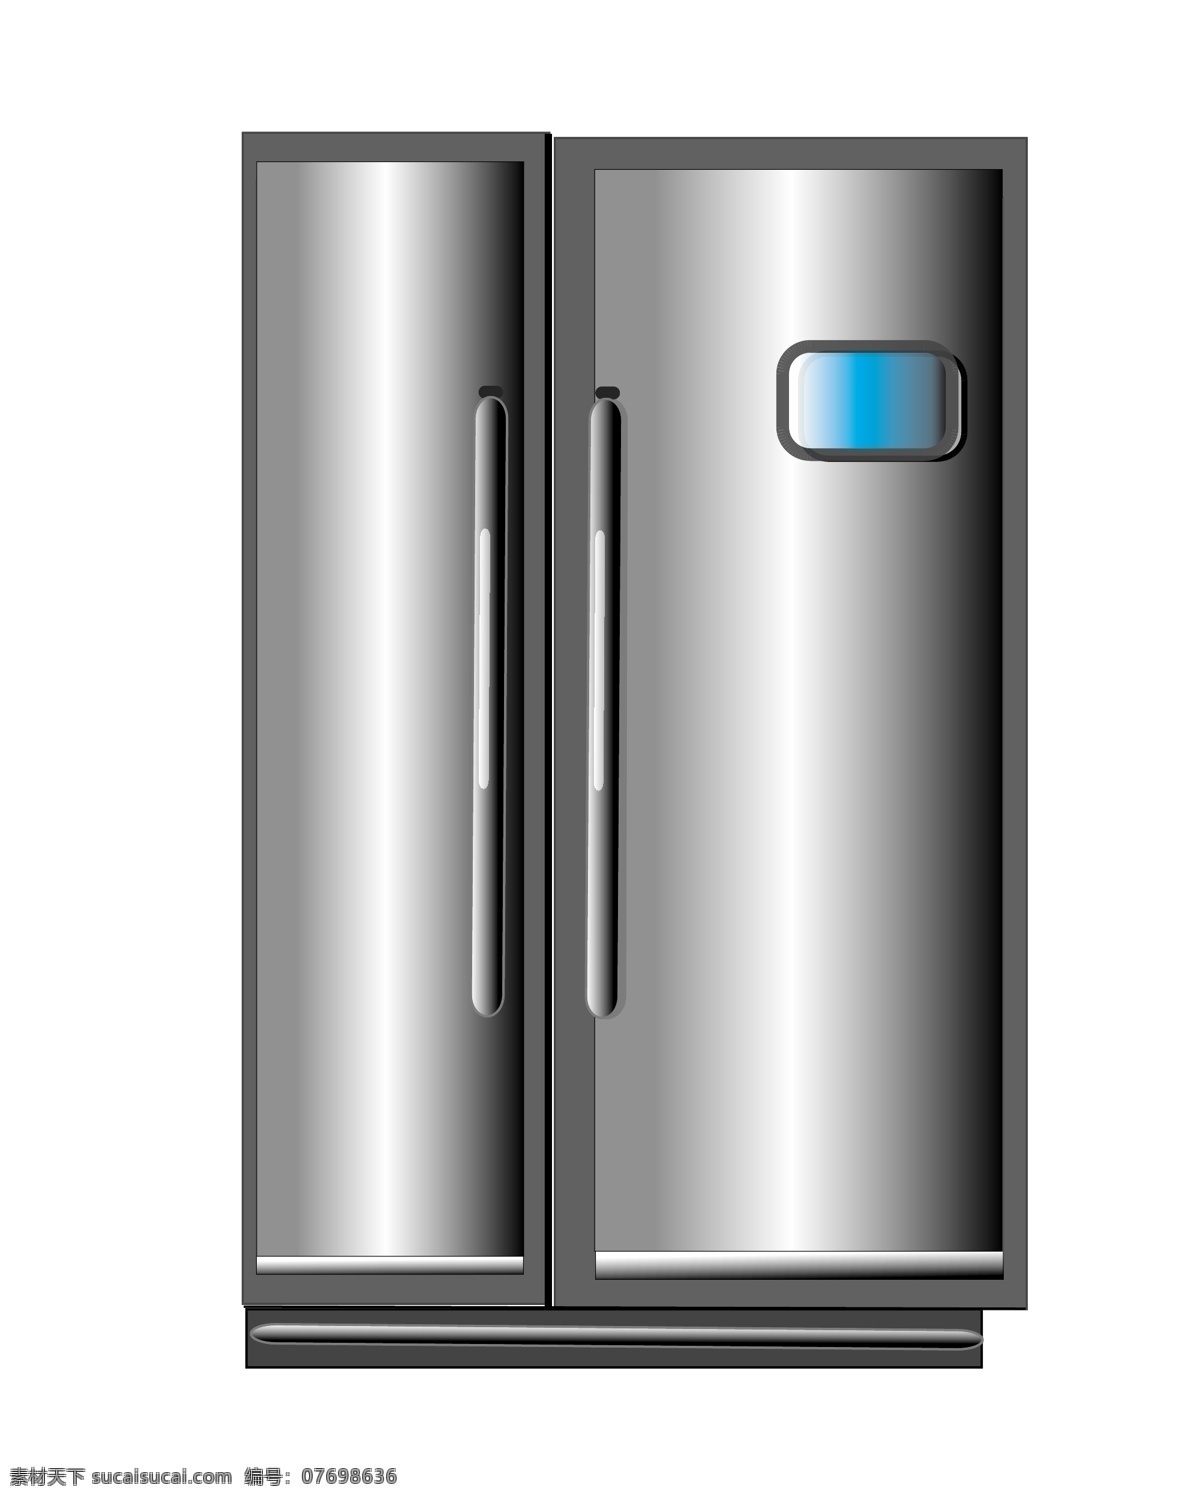 银色 双门 冰箱 插画 银色冰箱插画 双门冰箱 智能冰箱 灰色冰箱 手绘冰箱 厨房电器 家用电器 家电 蓝色屏幕